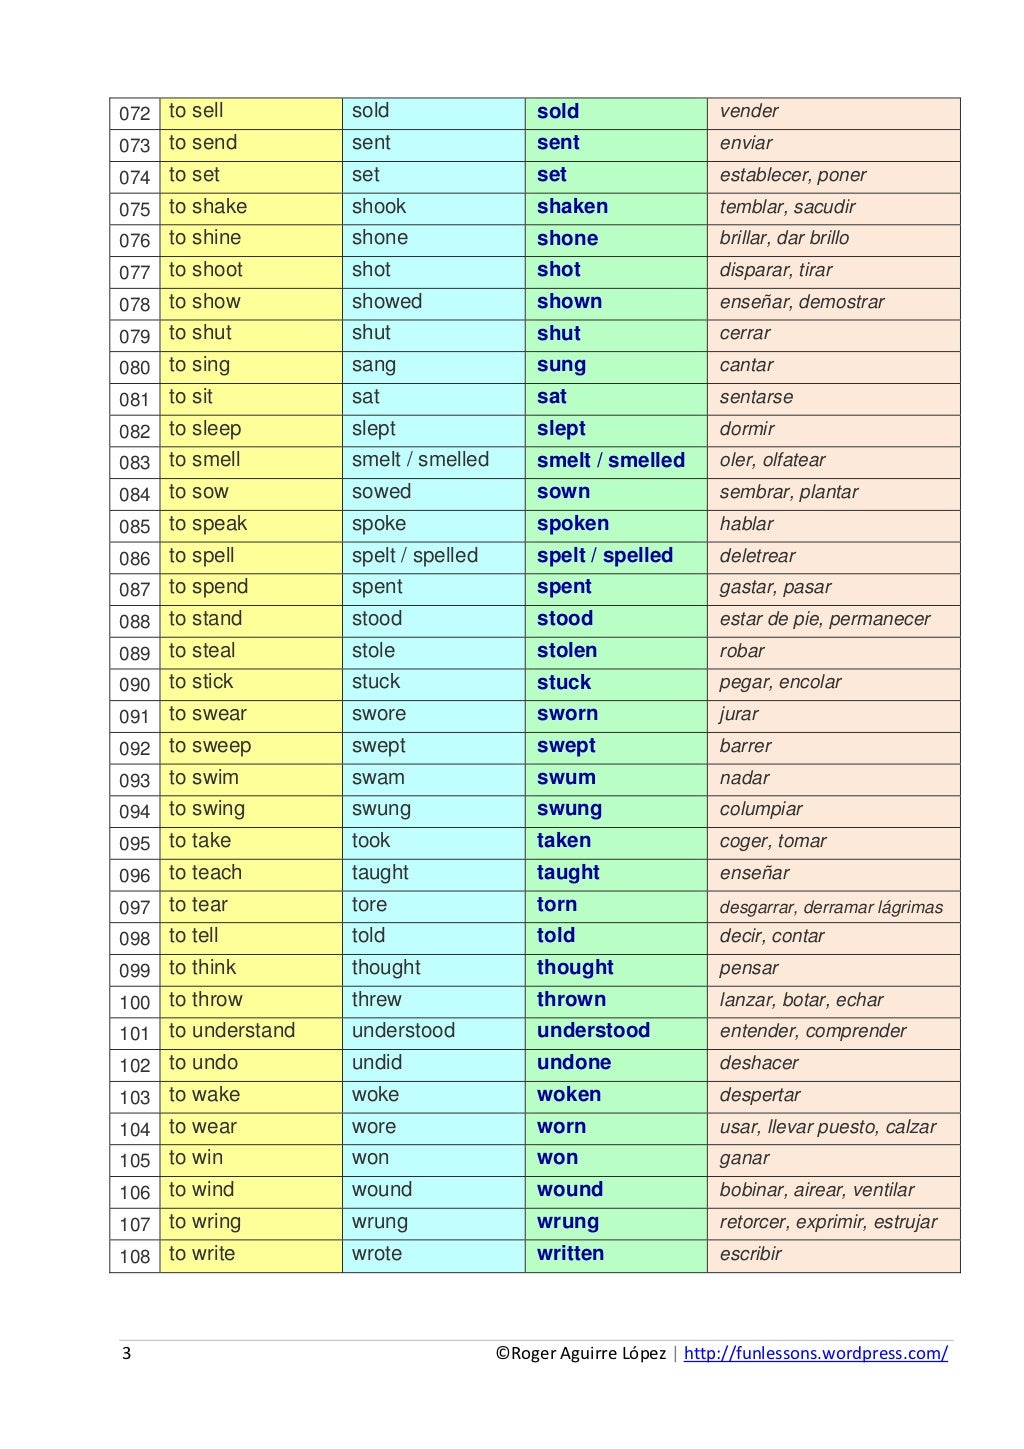 chart-of-irregular-verbs